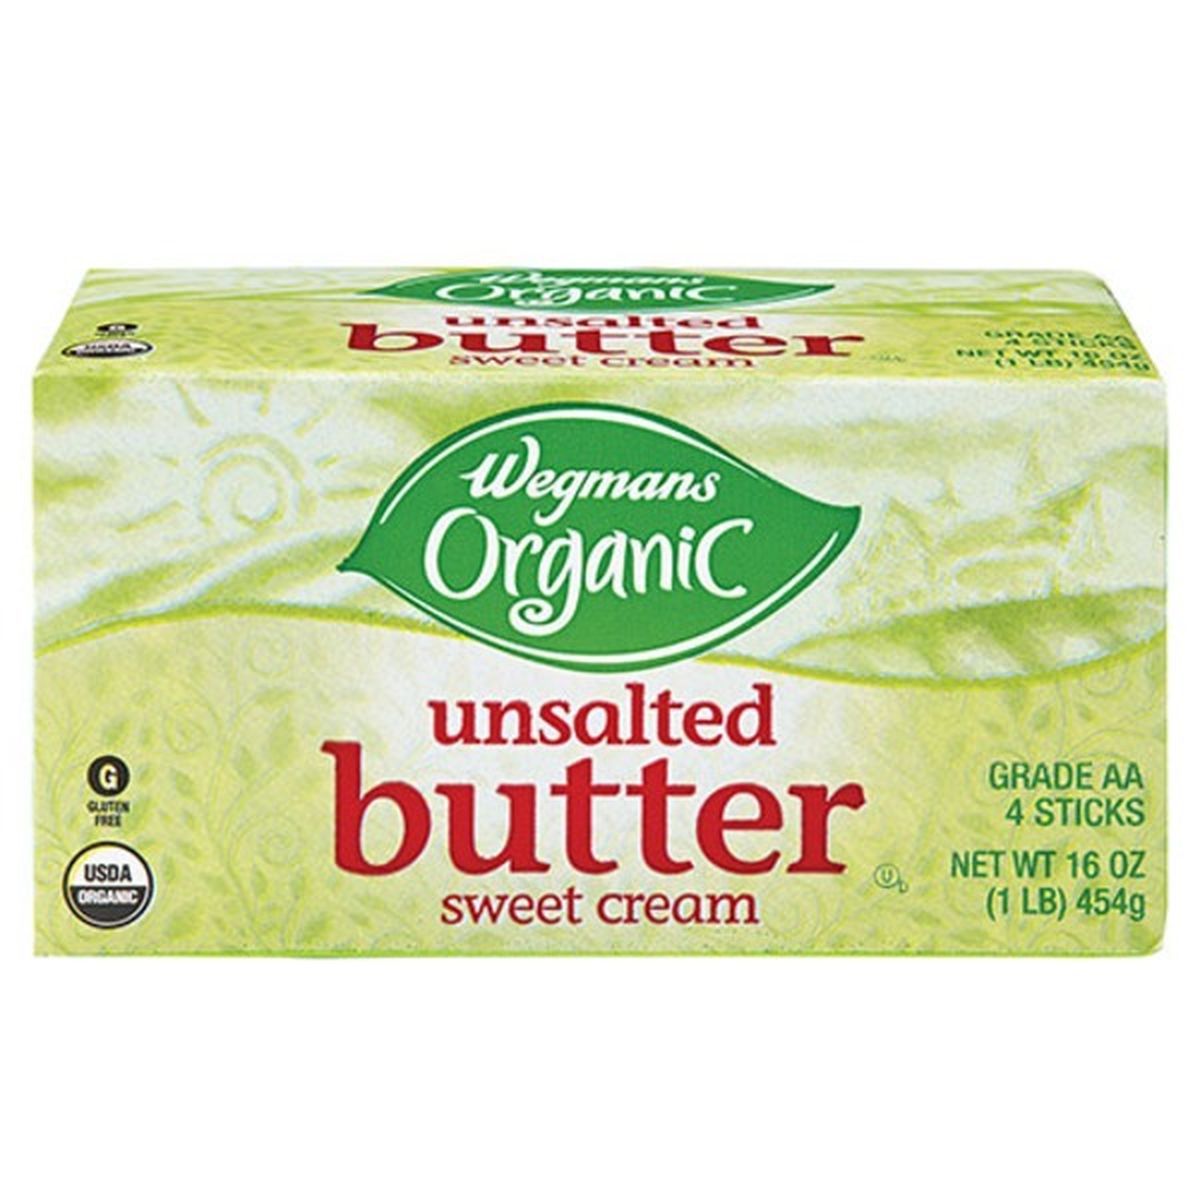 Calories in Wegmans Organic Unsalted Sweet Cream Butter Quarters